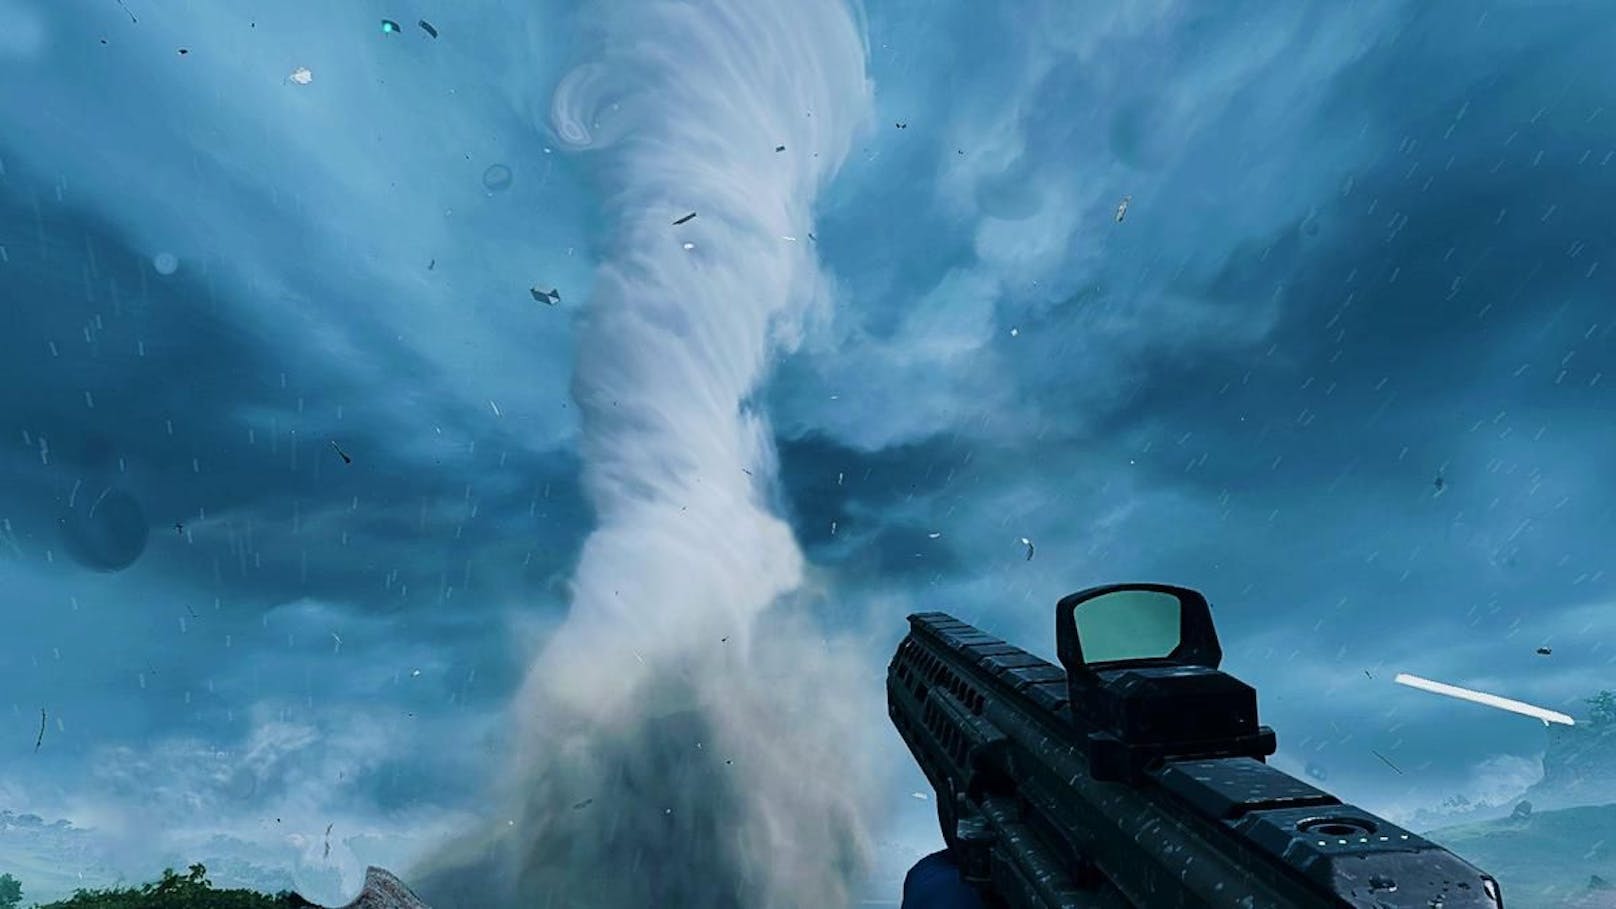 Im neuen "Battlefield 2042" gibt es auch Tornados und andere Unwetter. Die Fans hoffen auf einen ähnlich dynamischen Einfluss der Wettereffekte.